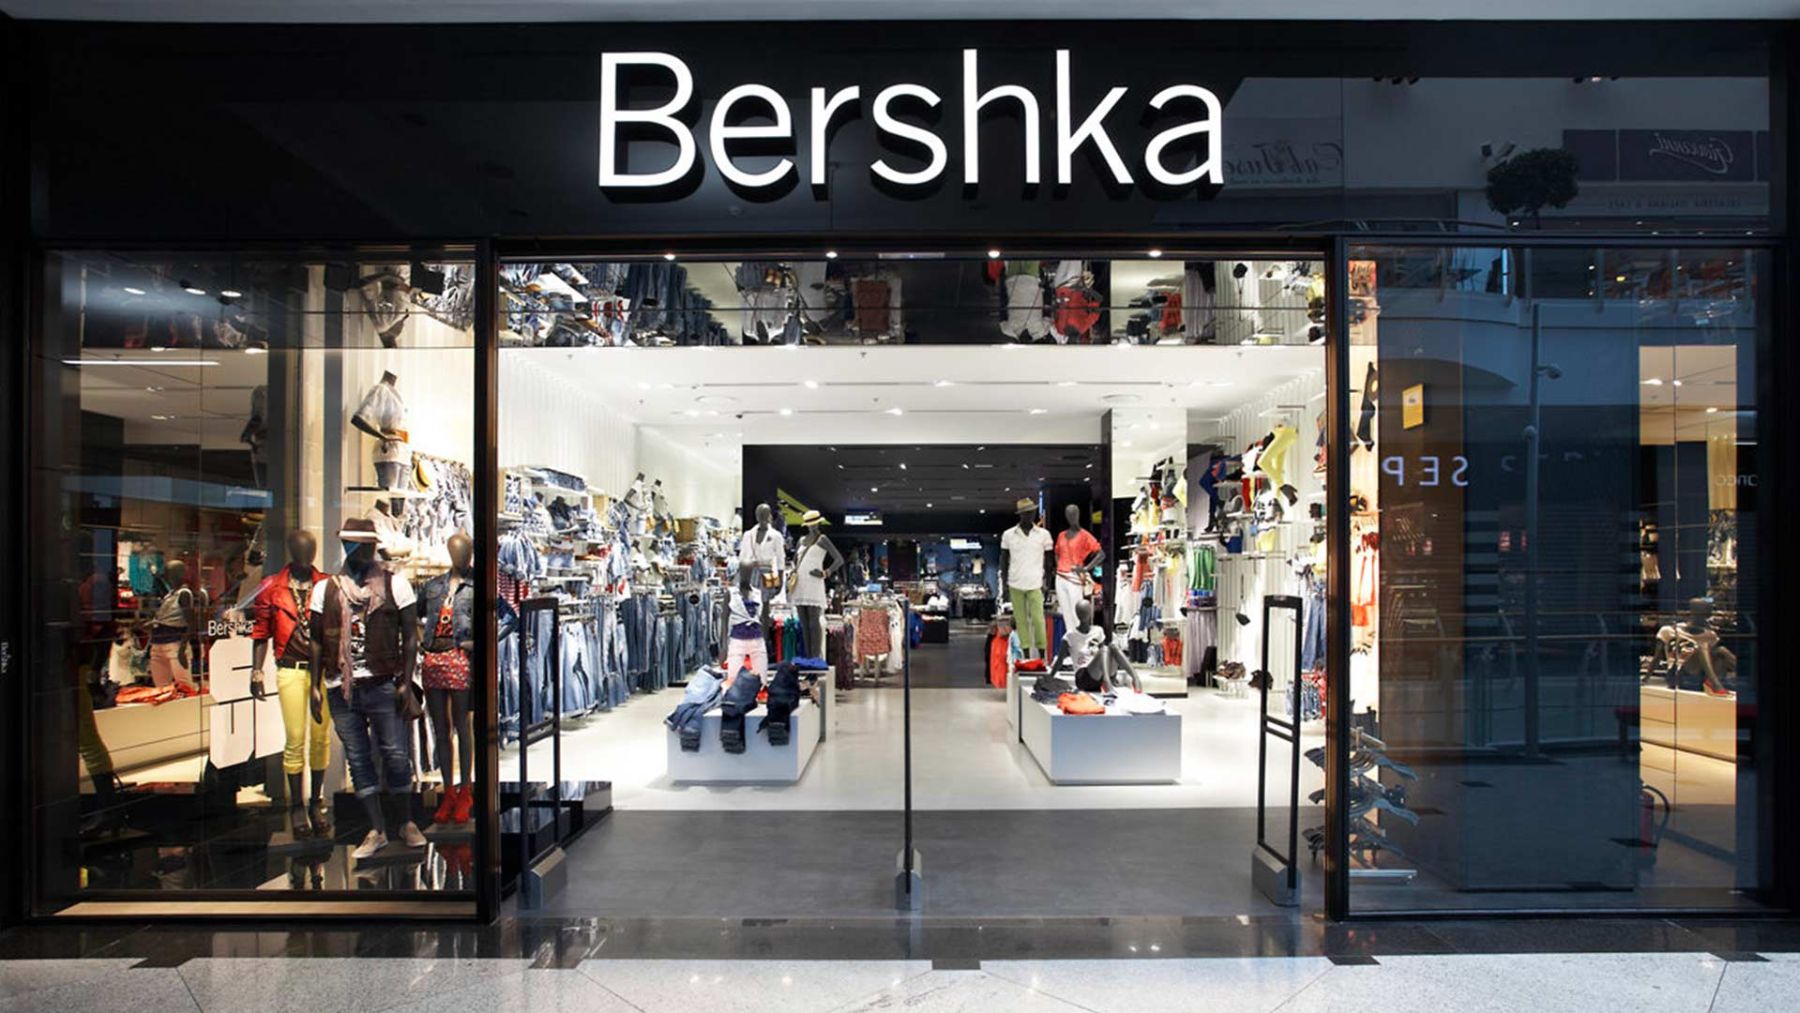 significa el nombre de Bershka?